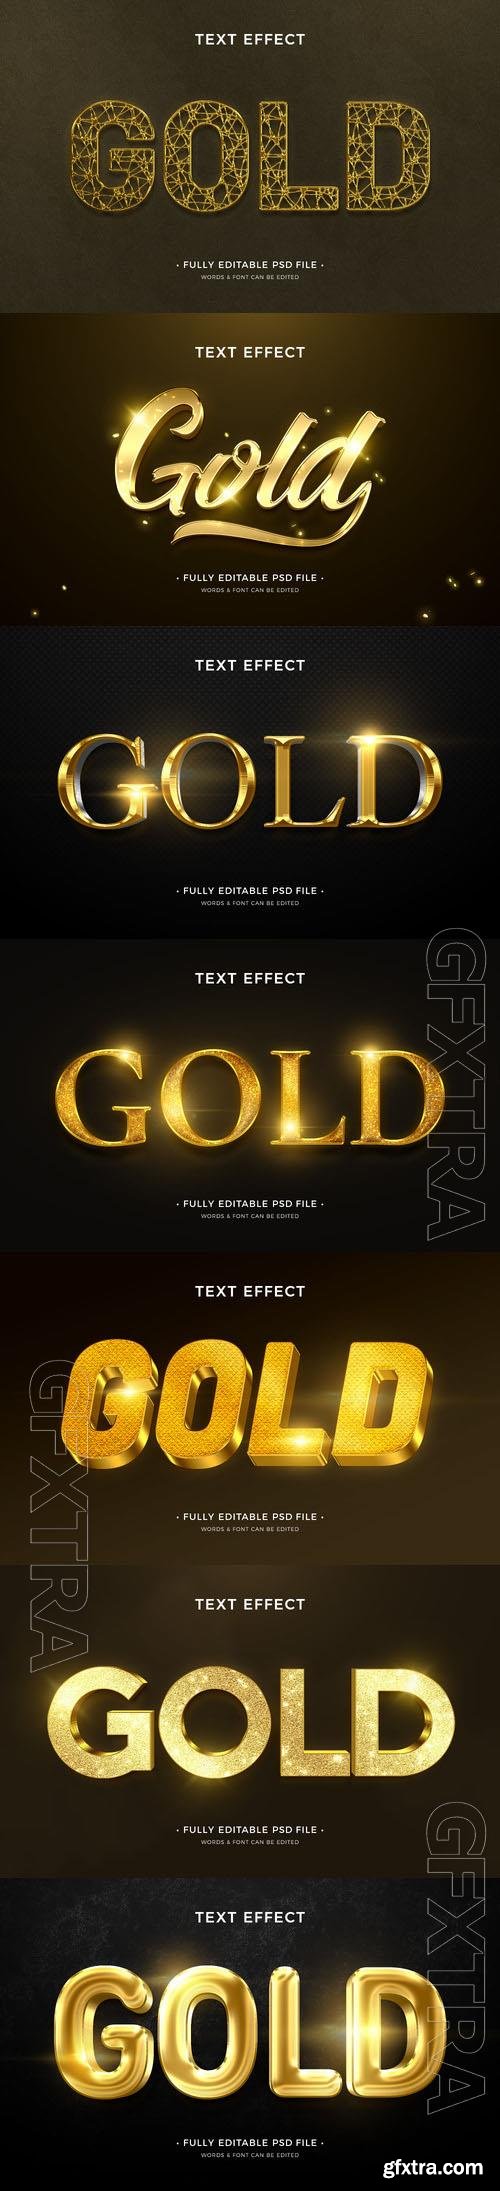 PSD gold text effect